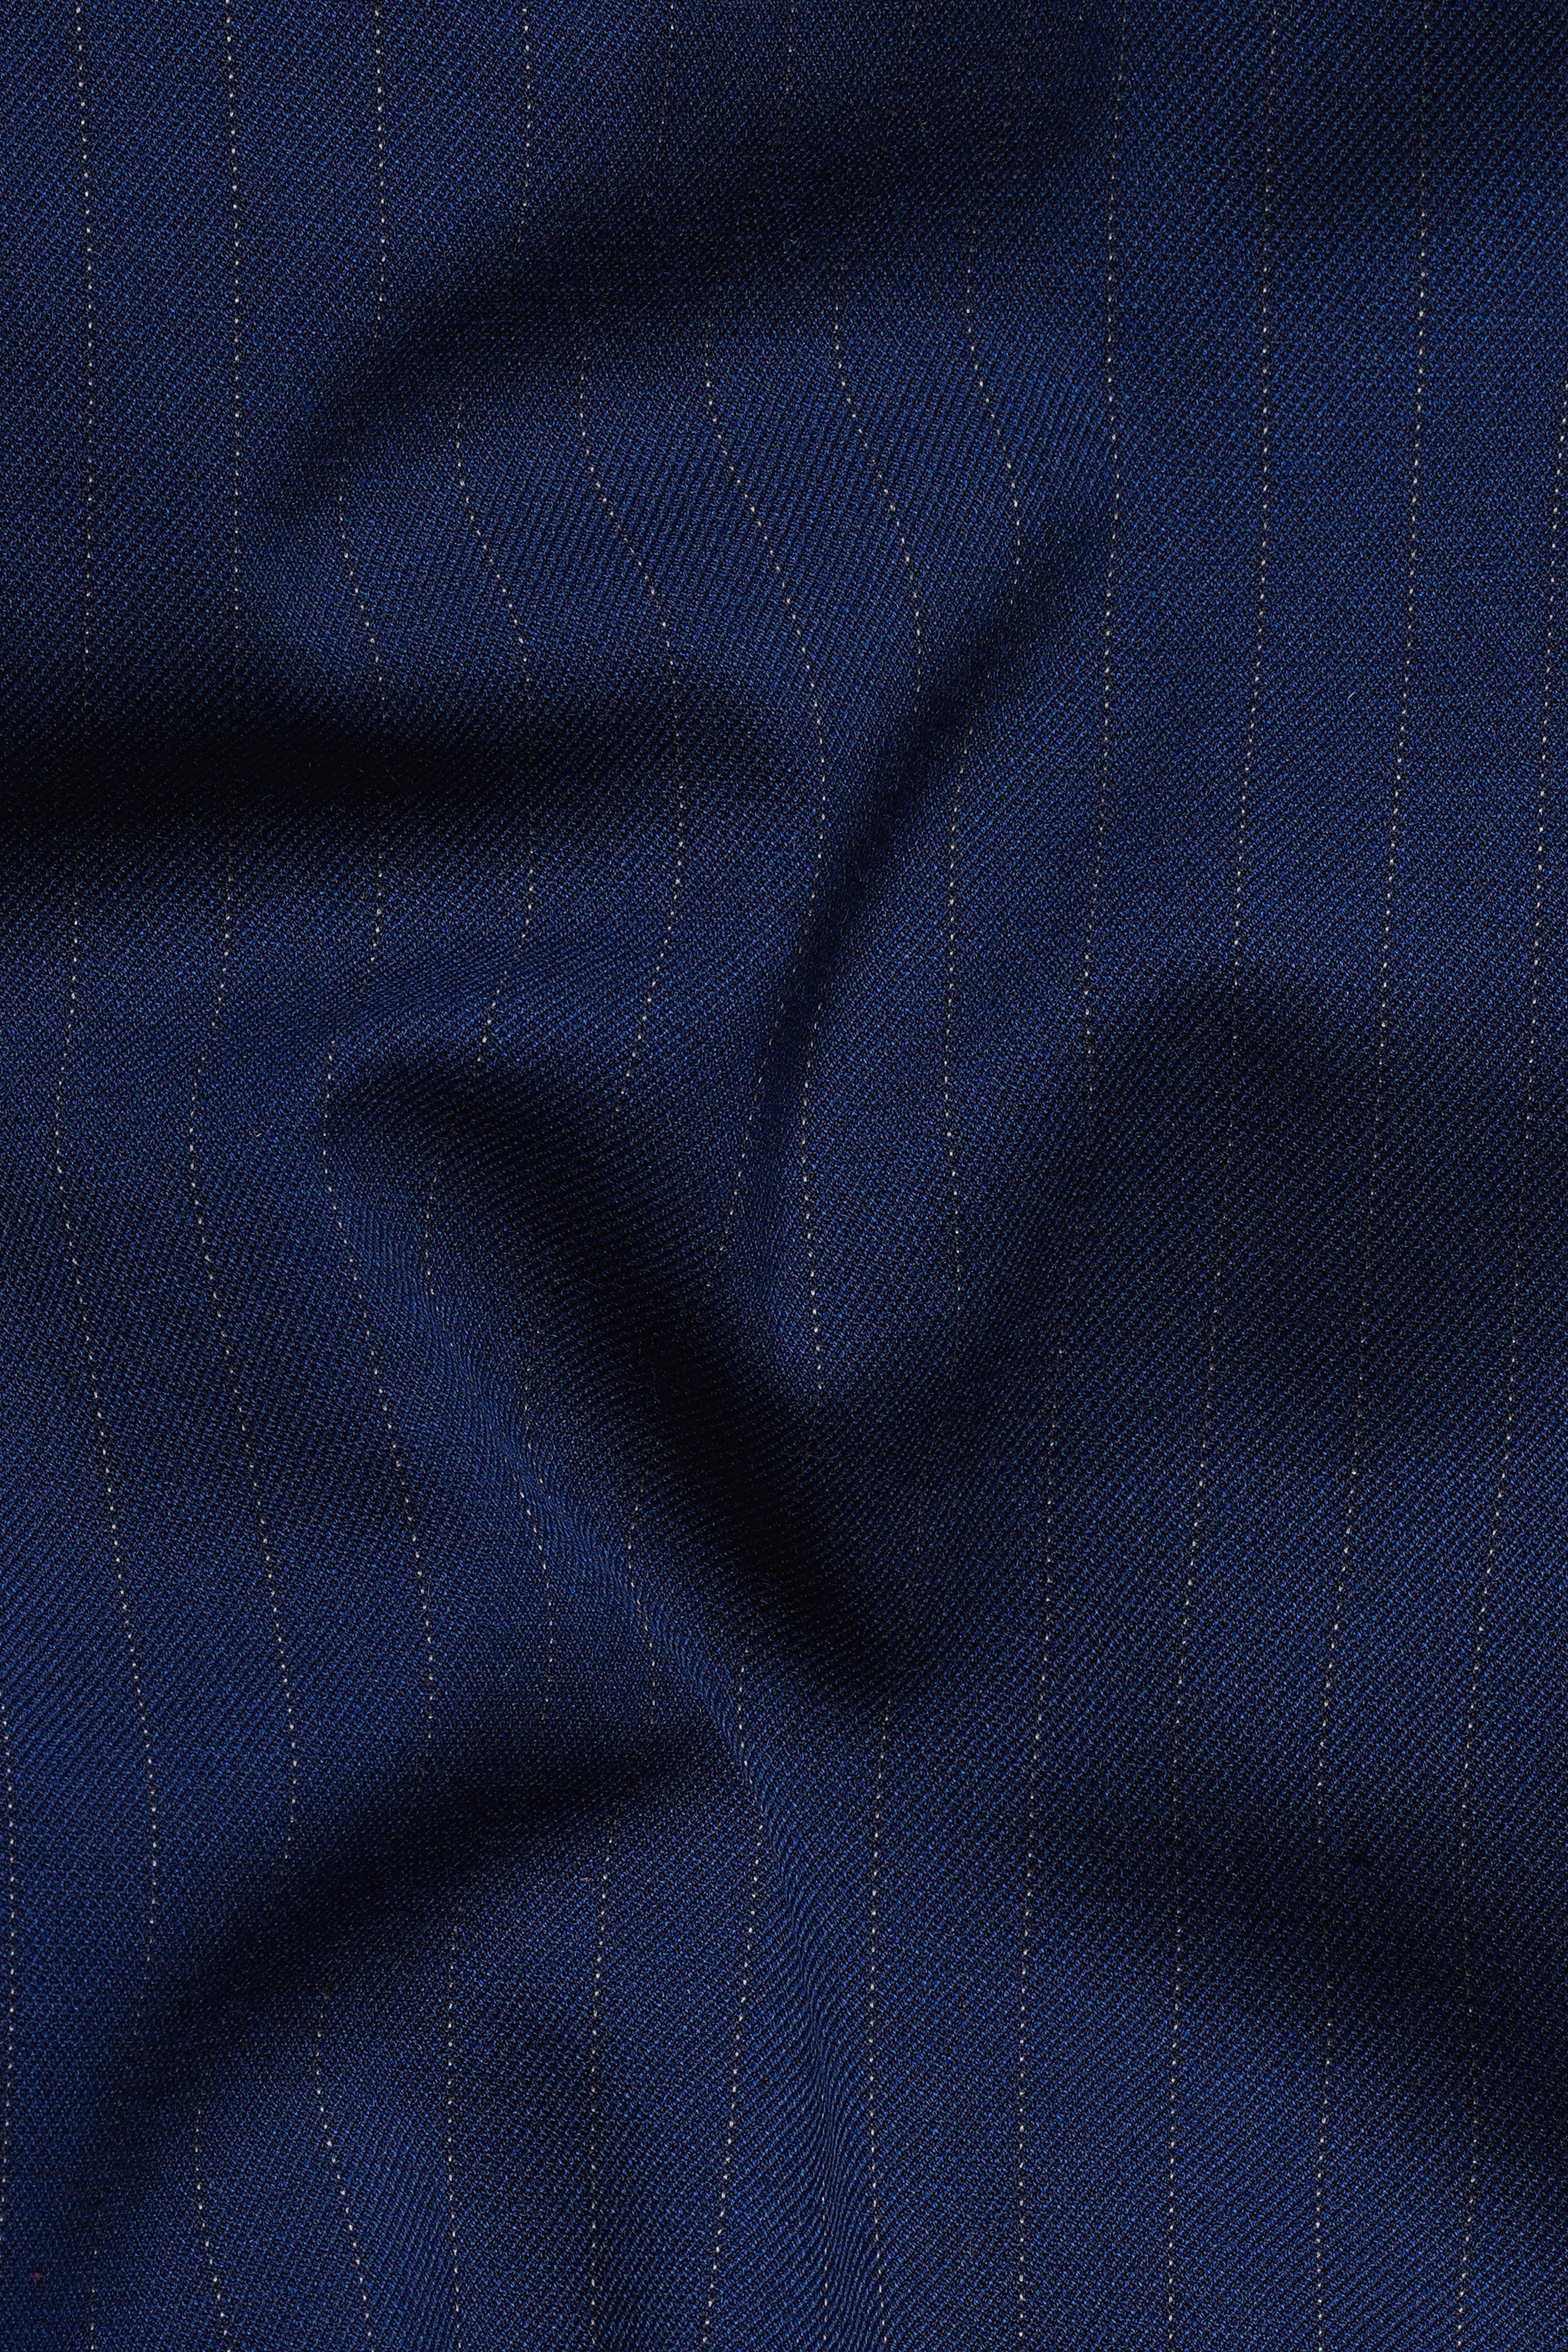 Ebony Clay Blue Striped Wool Rich Bandhgala Nehru Jacket